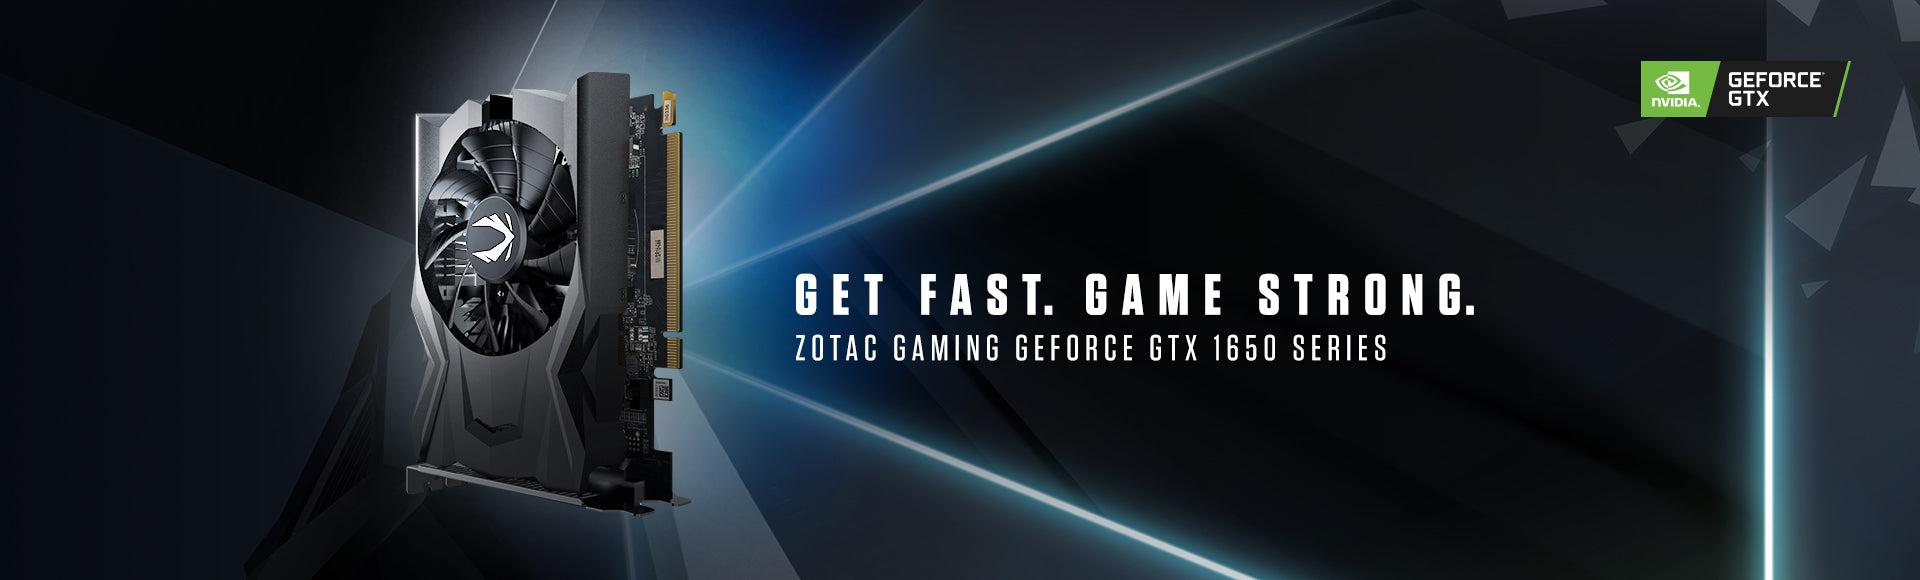 ZOTAC Nvidia GeForce GTX 1650 ग्राफिक कार्ड ट्यूरिंग आर्किटेक्चर लॉन्च भारत